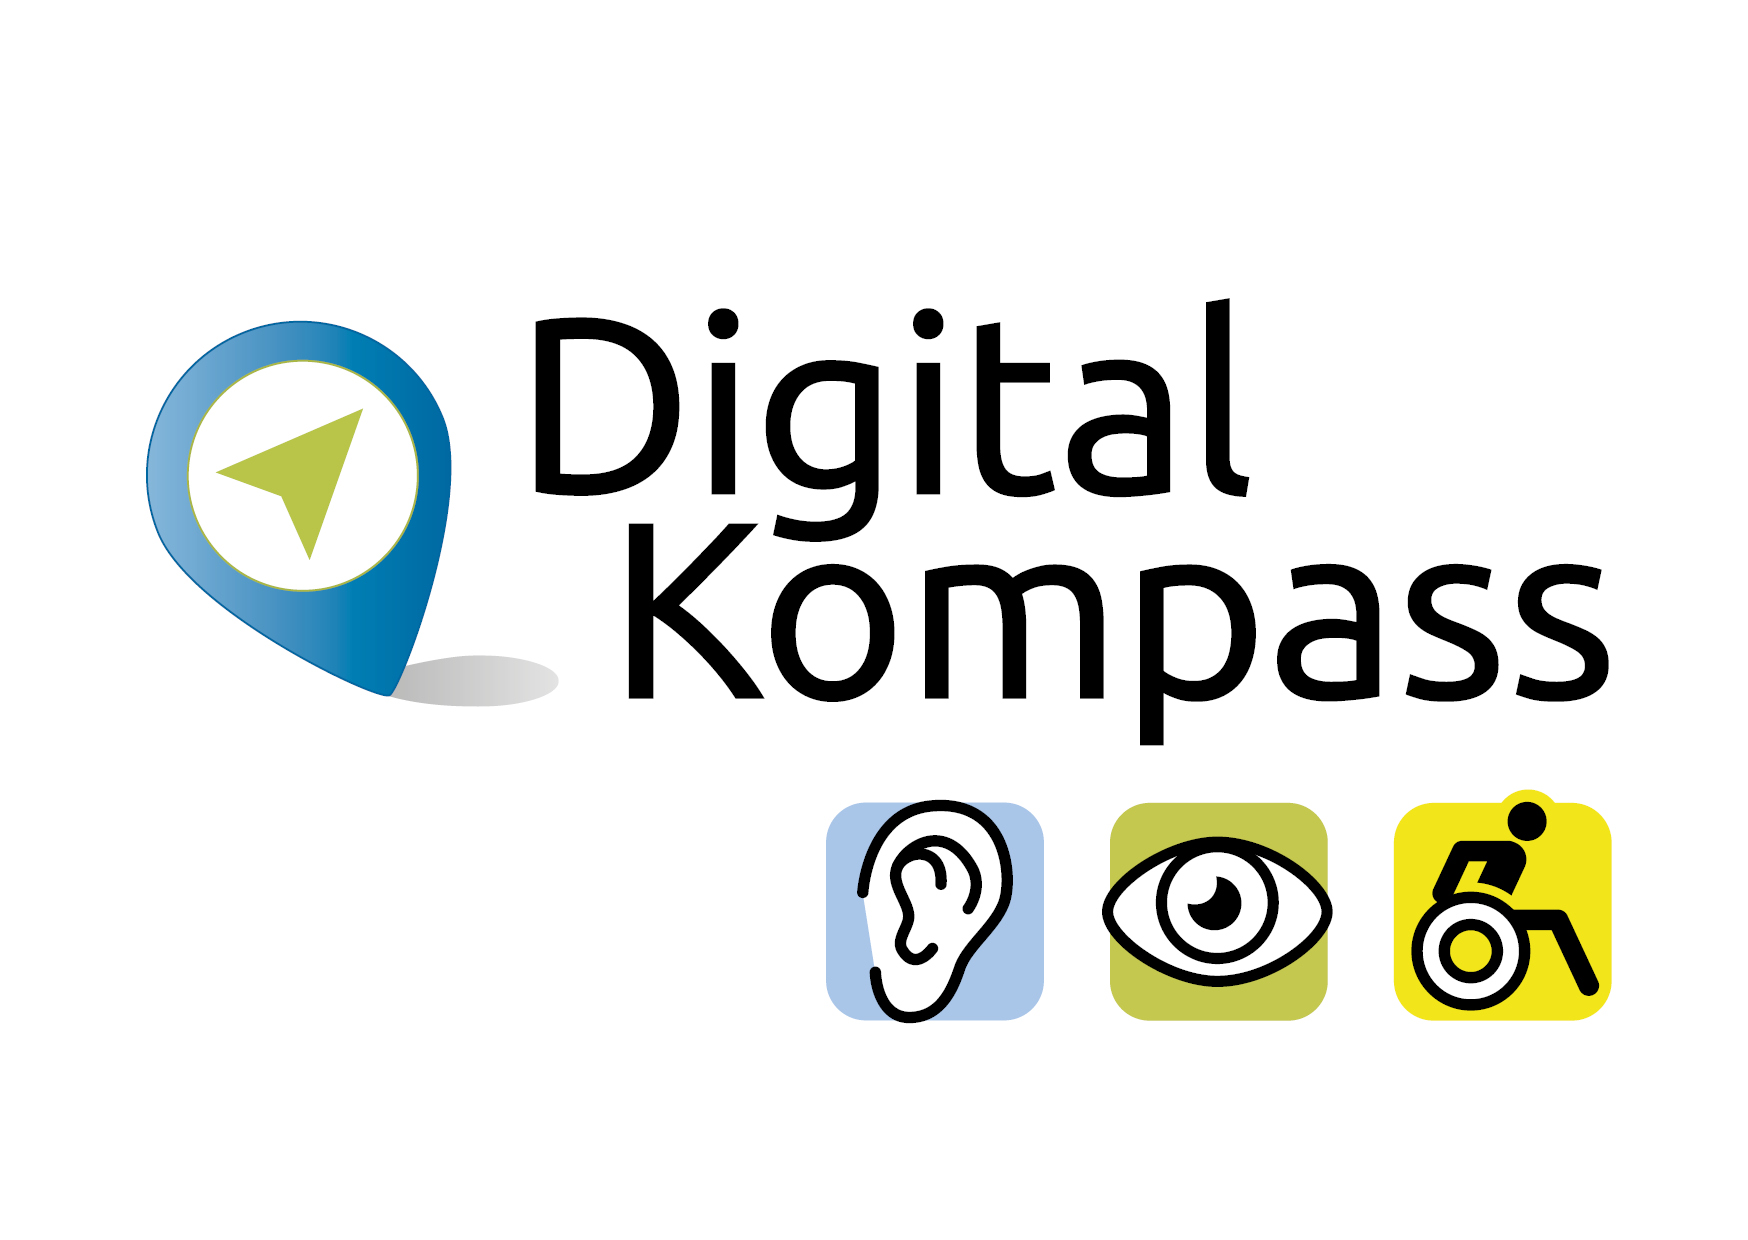 Logo Digital Kompass mit blauem Standortsymbol, drei Icons die auf Hör-, Seh- und Mobilitätseinschränkungen hinweisen und schwarzer Schriftzug 